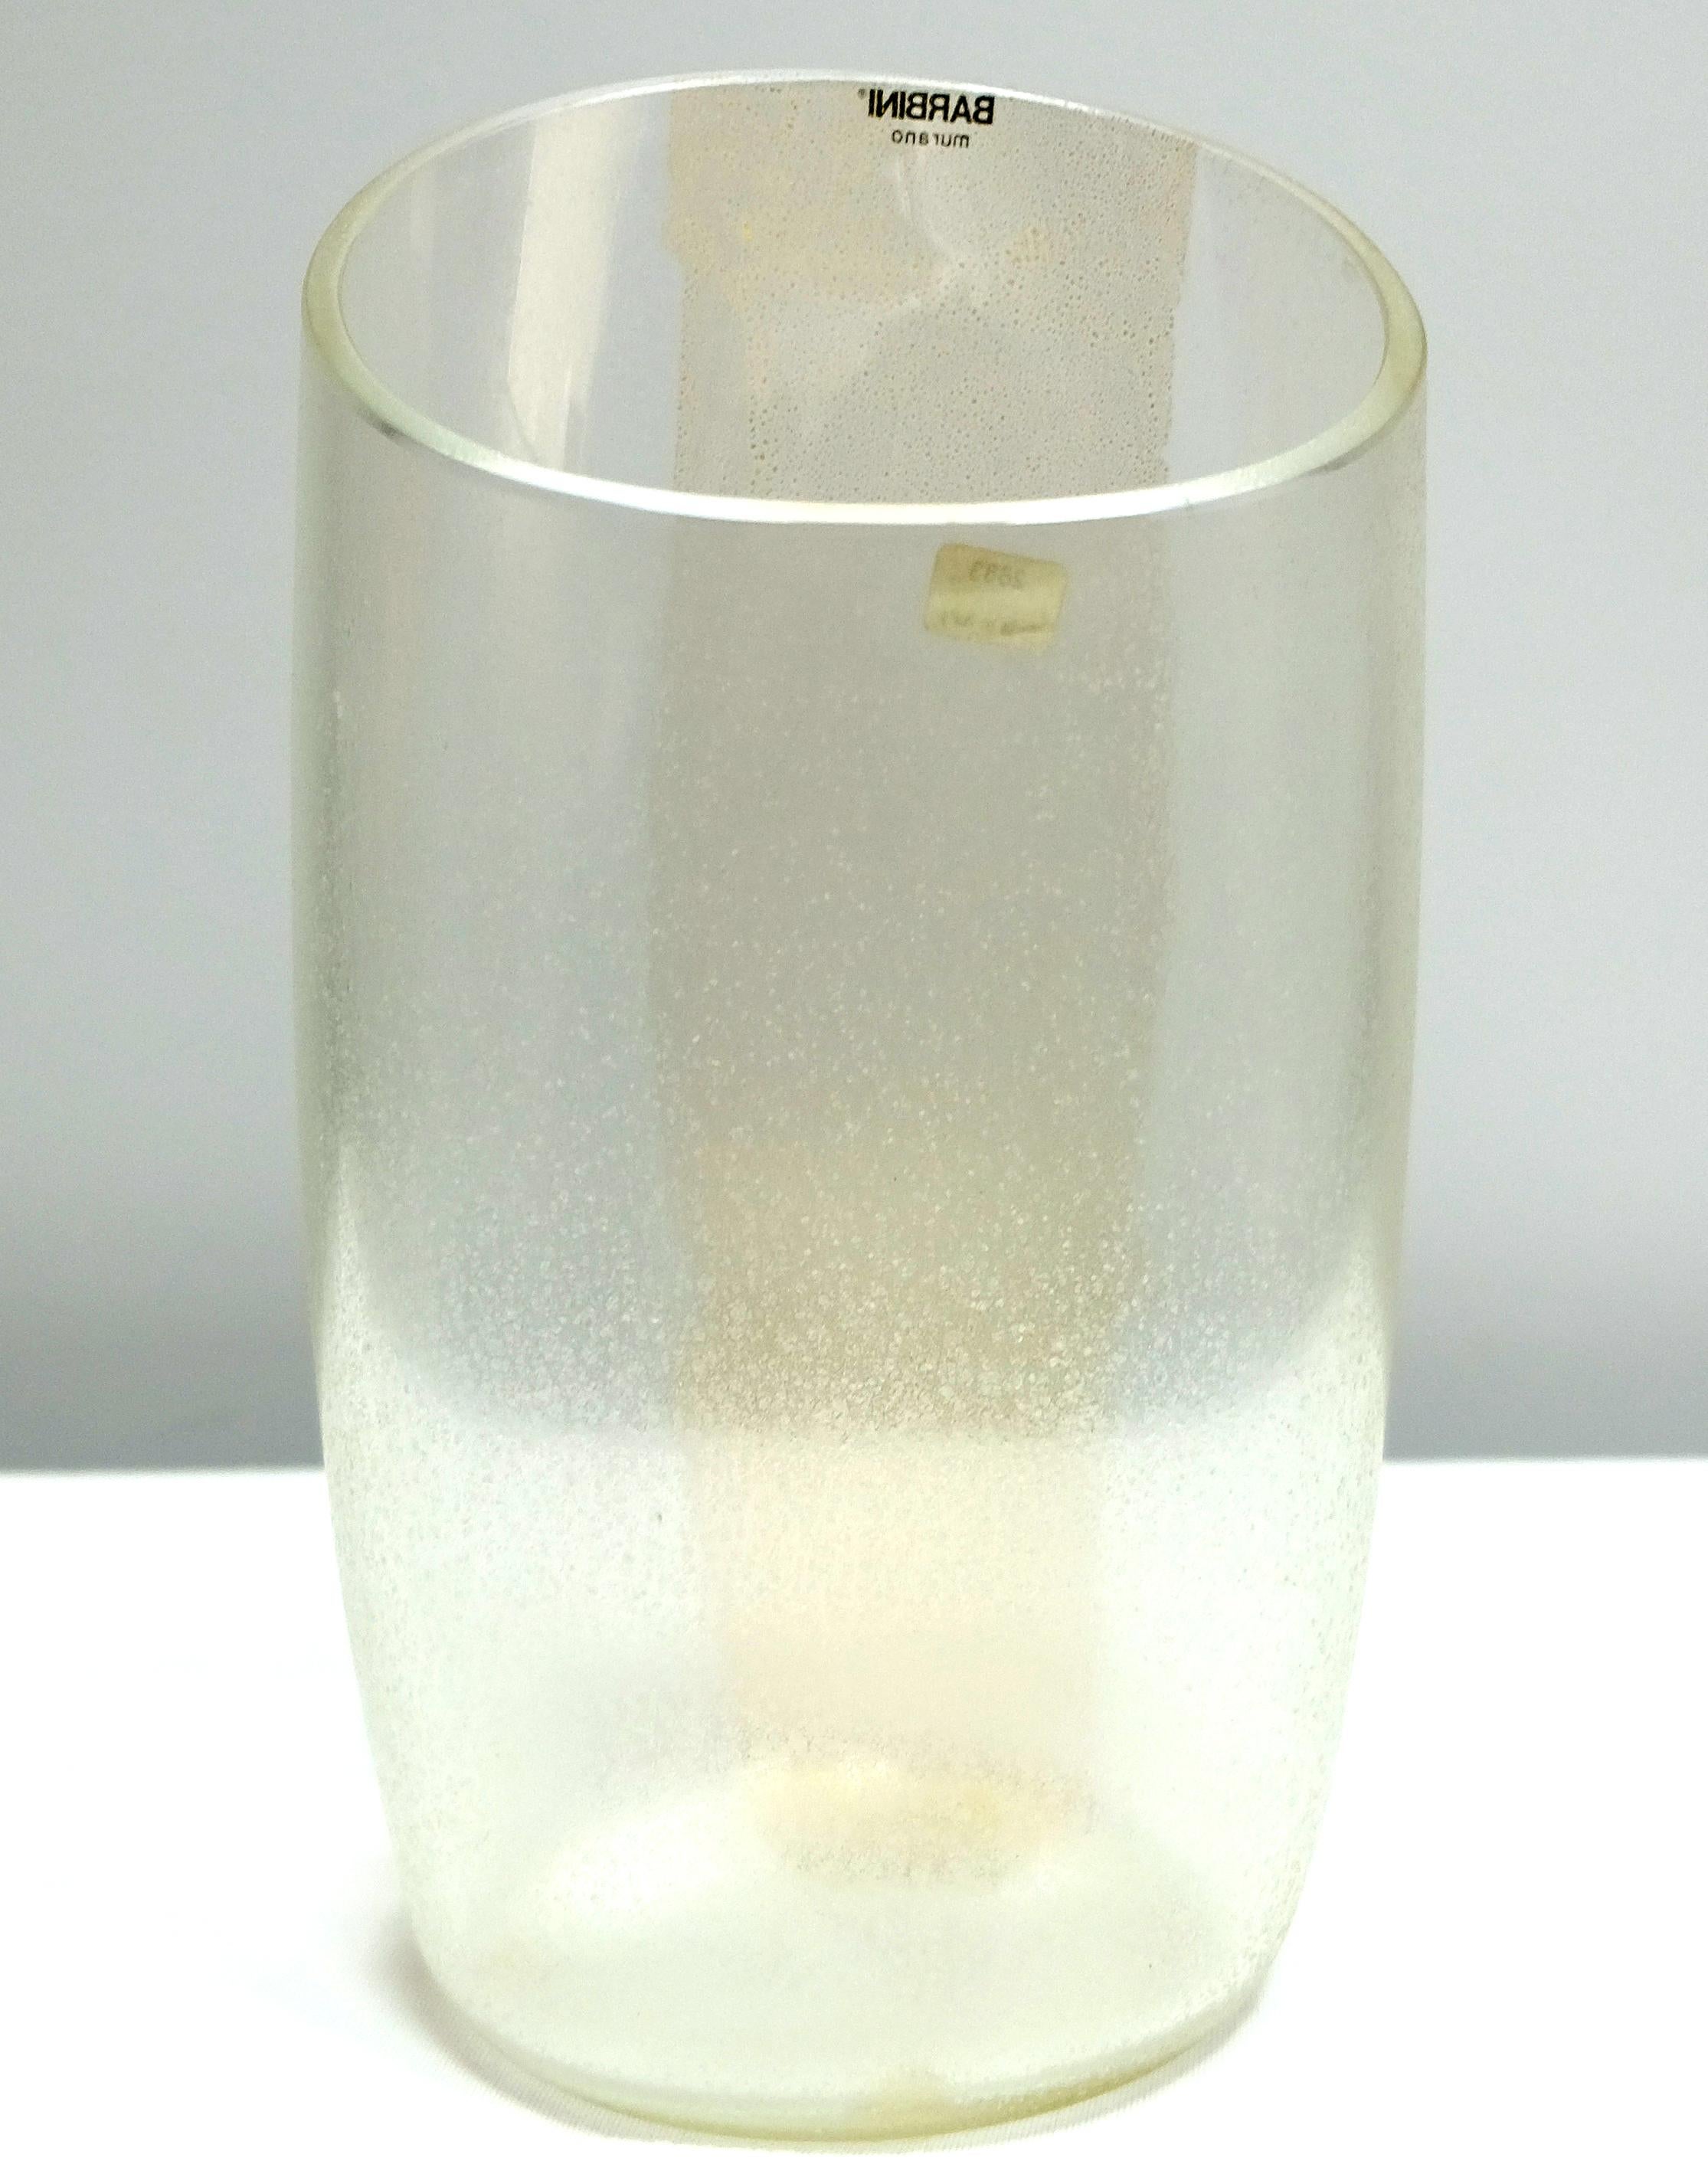 Vase en verre de Murano avec or infusé par Barbini, Italie, Asymétrique

Nous proposons à la vente un vase asymétrique en verre de Murano soufflé avec une utilisation subtile de l'infusion d'or par Barbini en Italie. Ce vase en verre de Murano